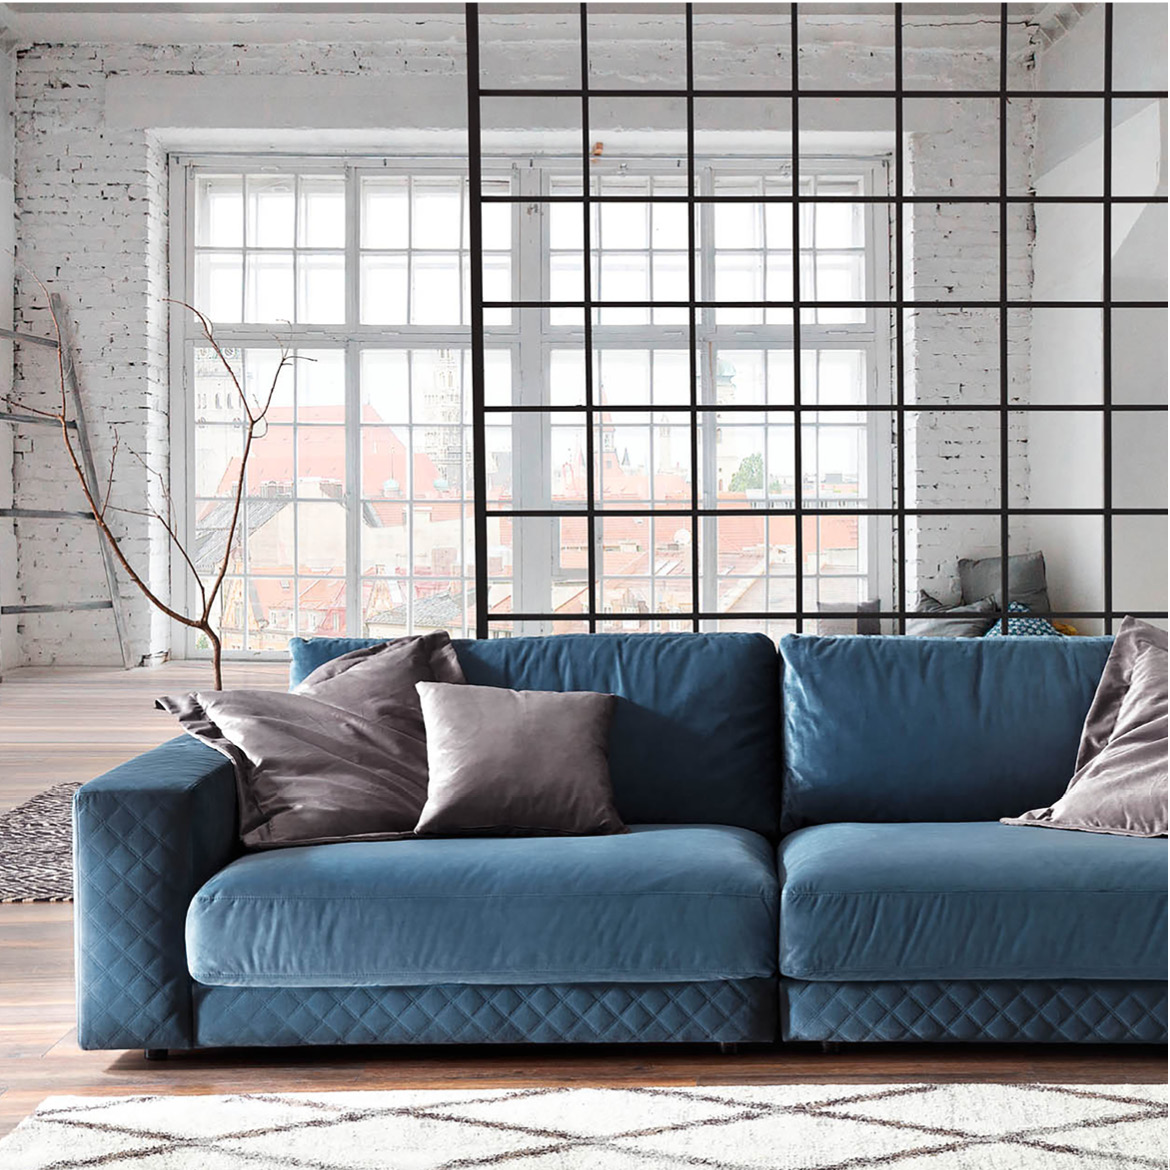 Bild von einem blauen Sofa